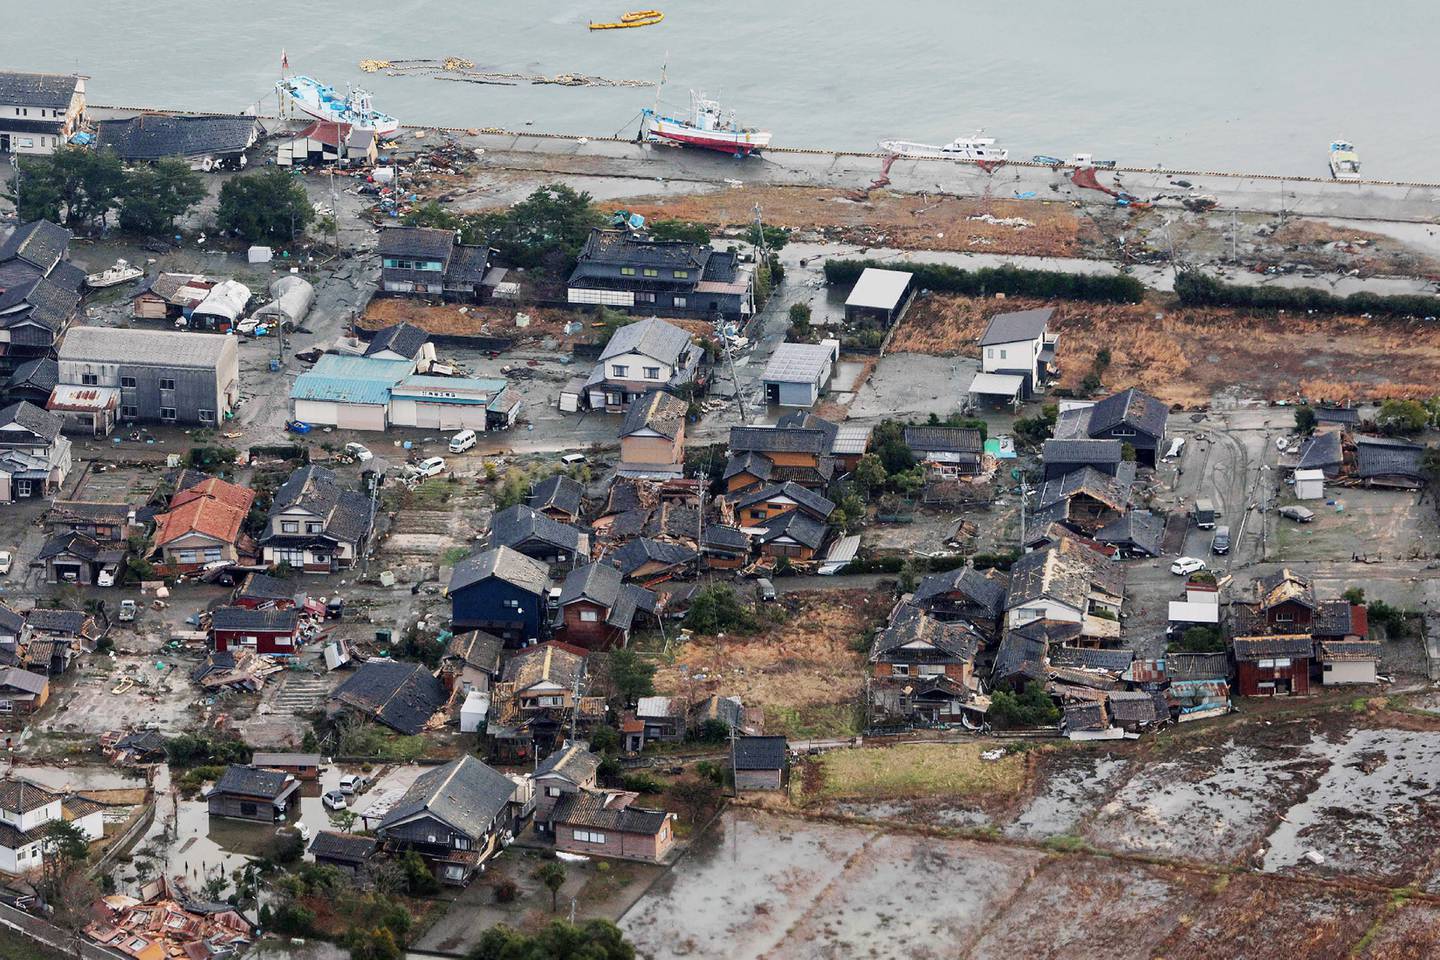 Las imágenes aéreas revelaron la devastación en el puerto de Wajima, donde un edificio de siete pisos colapsó a causa de un incendio, y casas antiguas en el distrito Matsunami de Noto quedaron destruidas, según un video compartido en redes sociales.